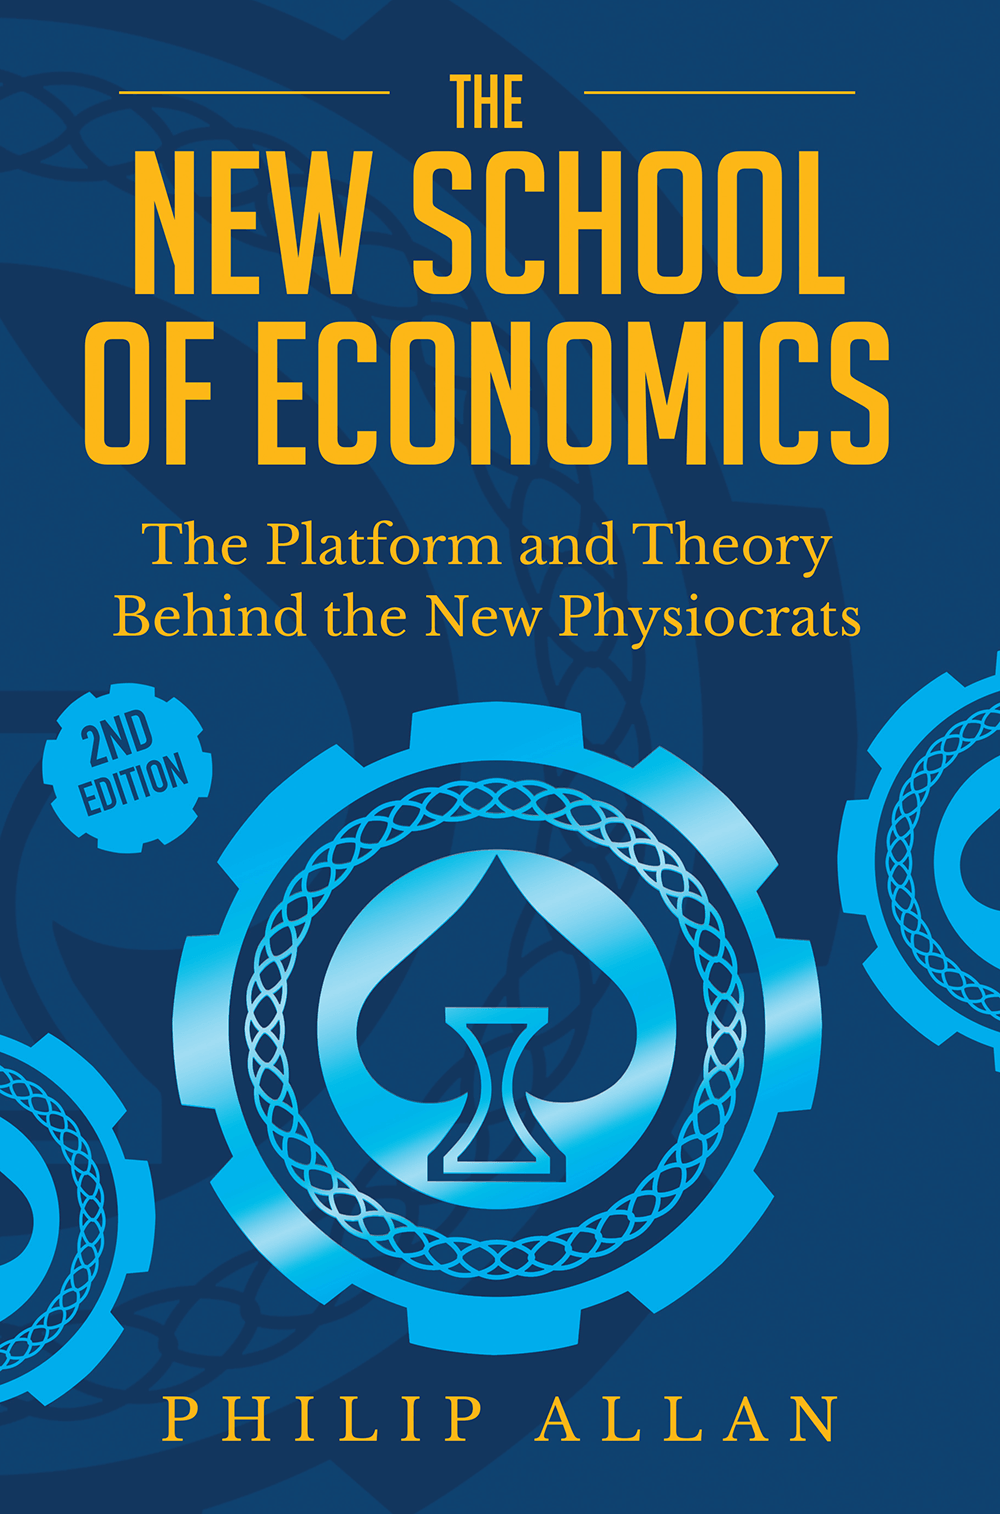 The New School of Economics - Shepheard Walwyn Publishers